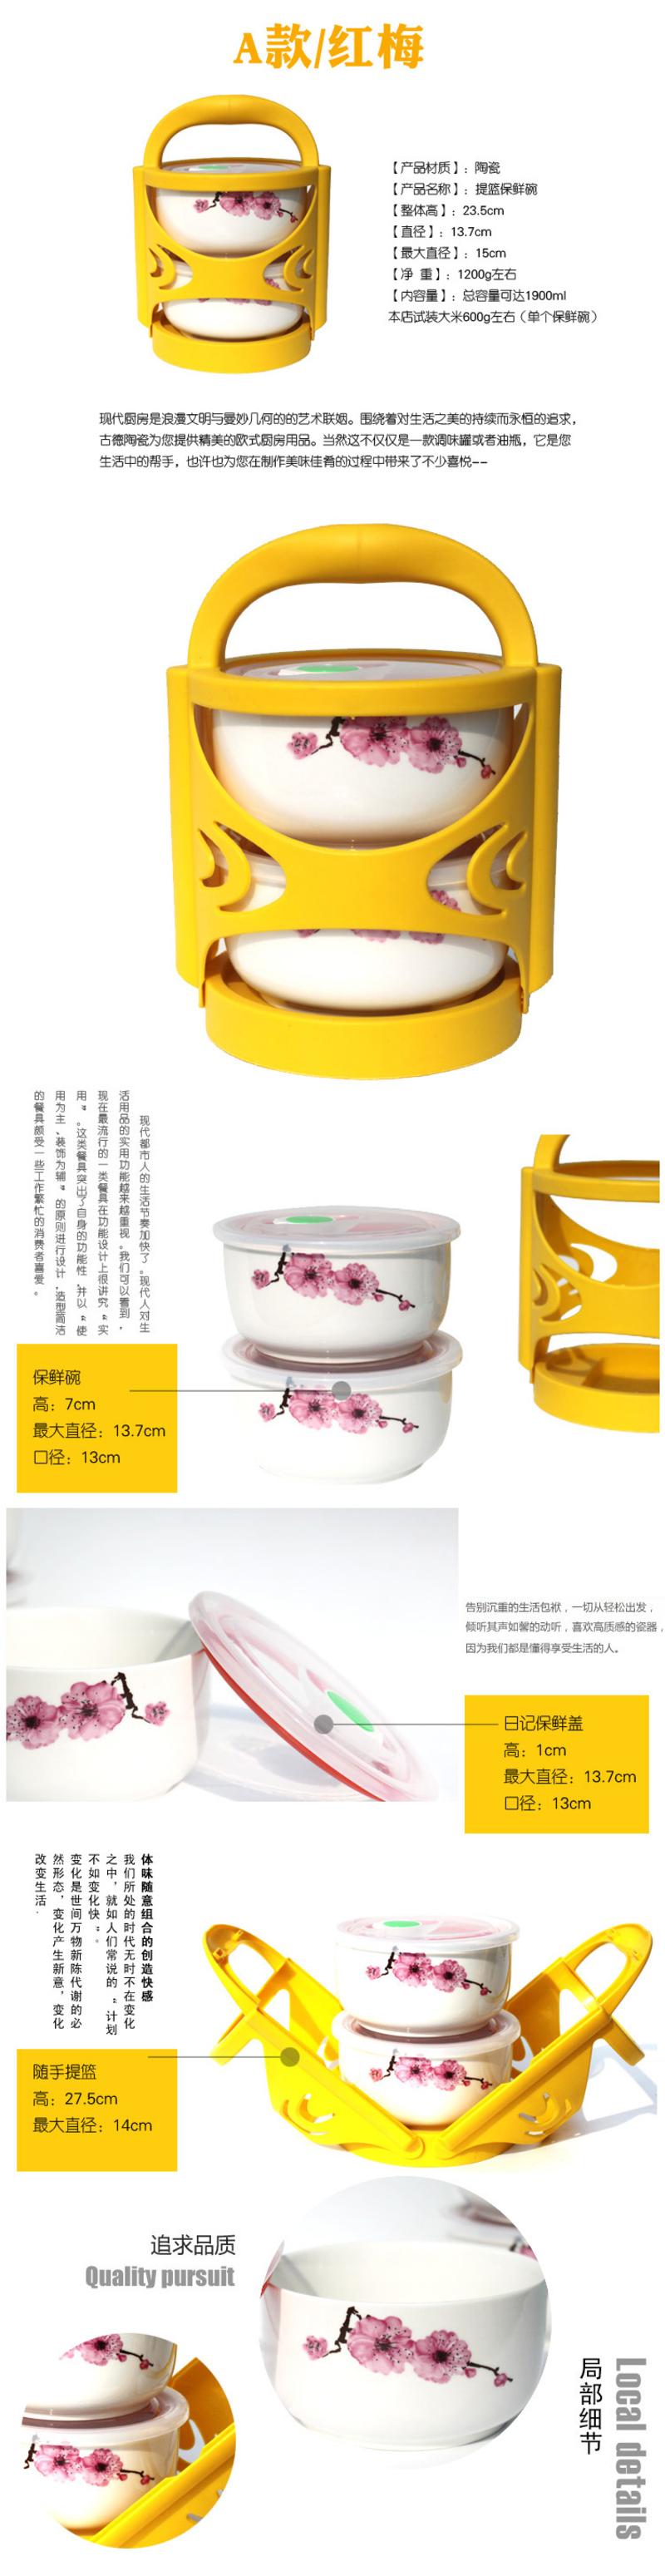 【景邮陶瓷】陶瓷保鲜碗 骨质瓷饭盒 提篮式2件套便当盒 微波炉冰箱适用 红梅